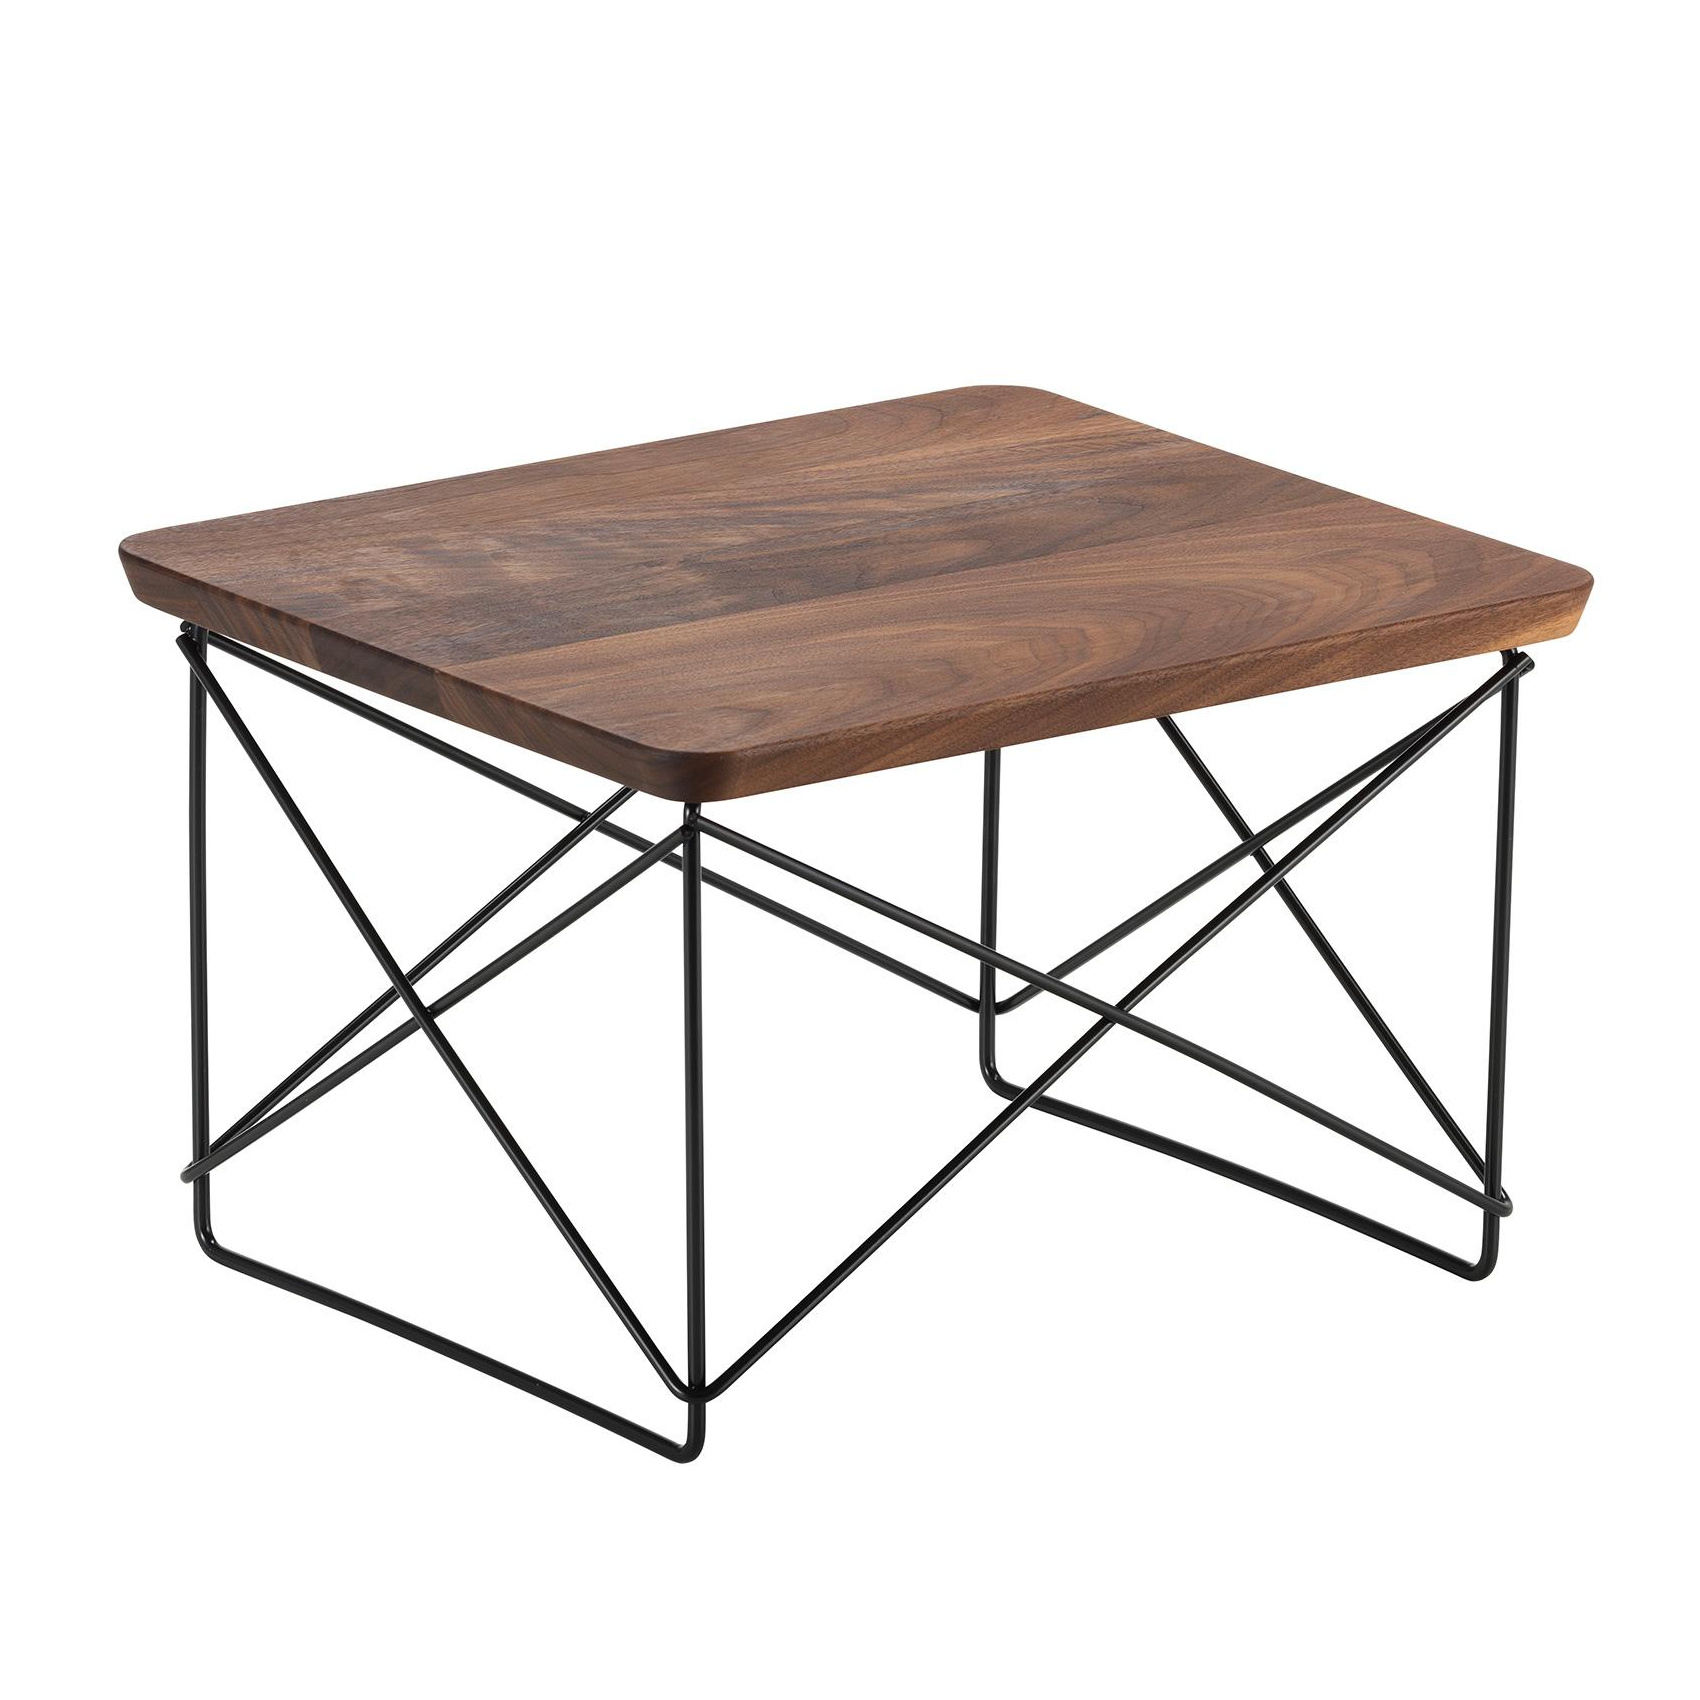 Vitra - Occasional Table LTR Beistelltisch basic dark - nussbaum/Tischplatte Massivholz geölt/Gestell basic dark schwarz pulverbeschichet/LxBxH 39,2x3 von Vitra